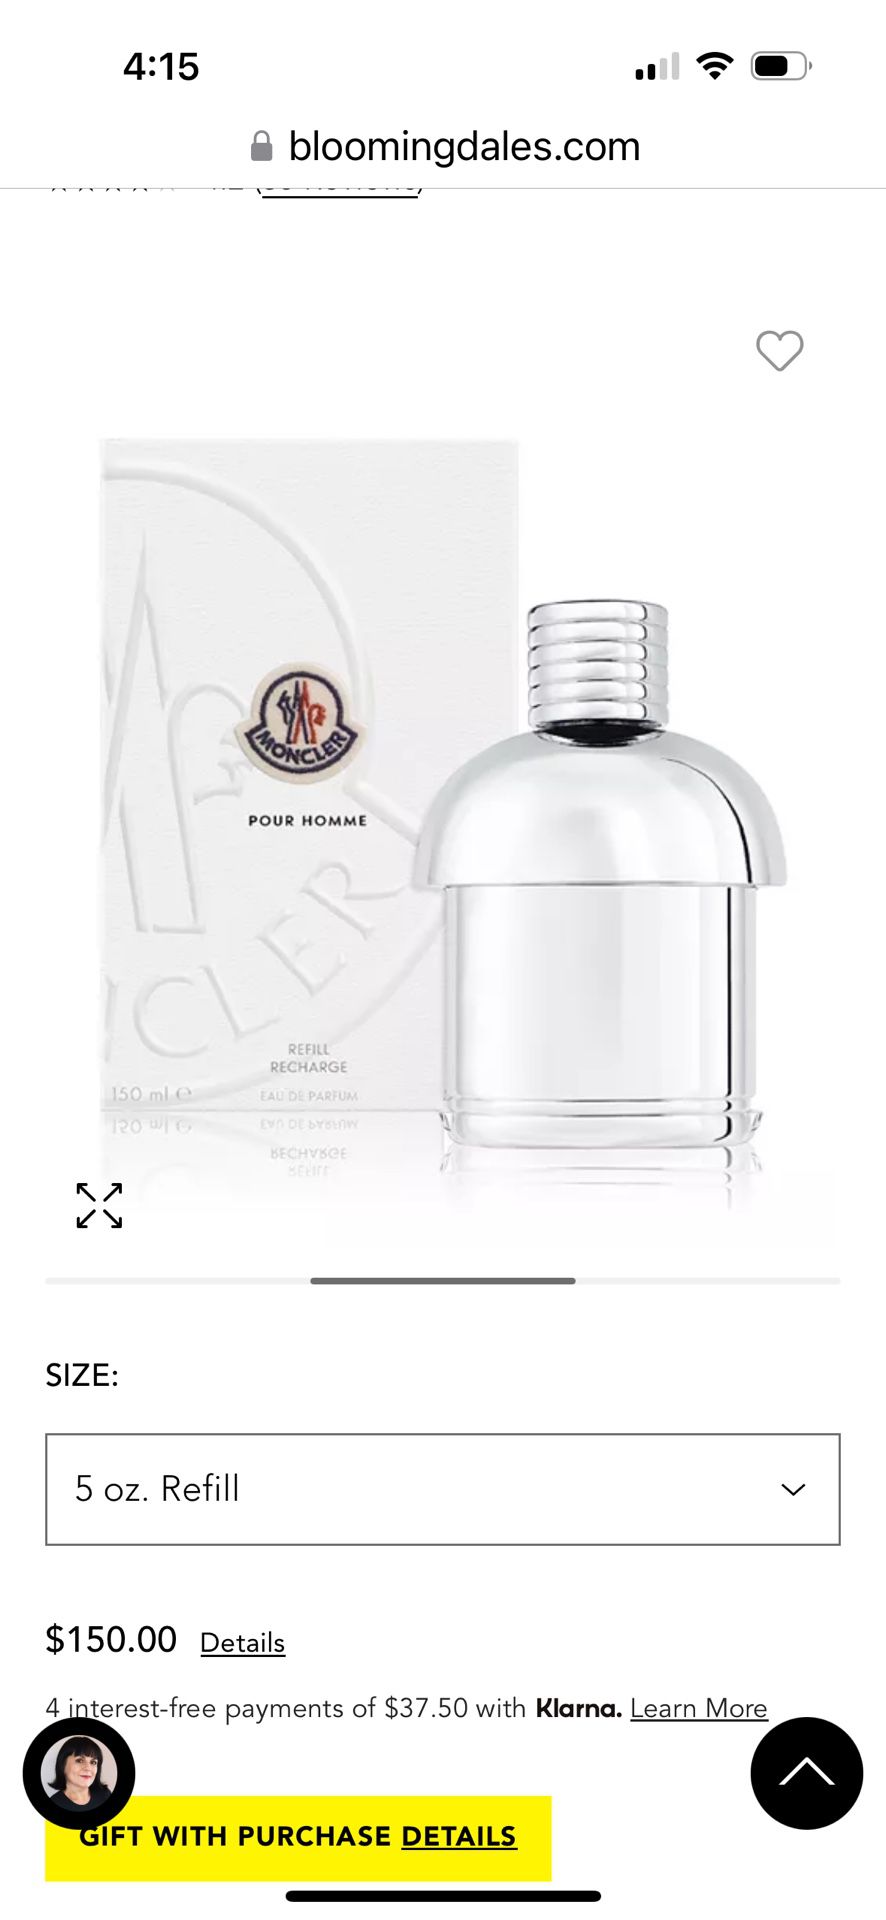 Moncler Pour Homme Eau De parfum (men’s Fragrance)